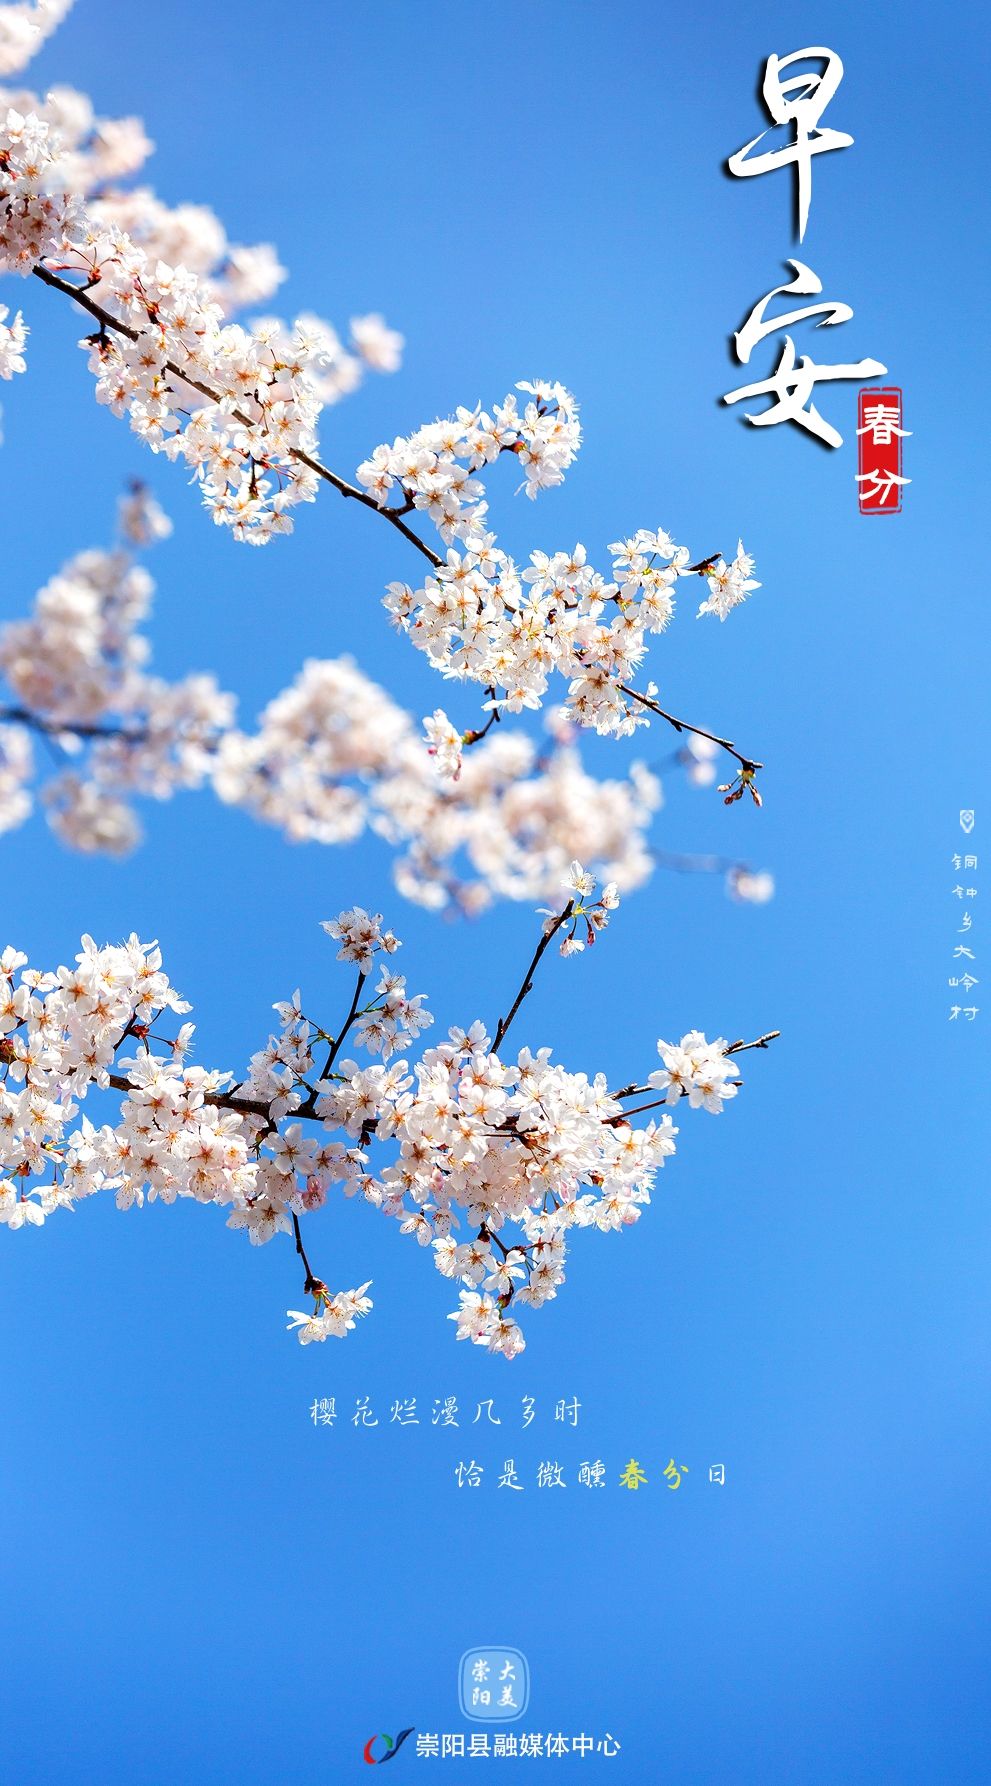 早安·大美崇阳——樱花烂漫几多时，恰是微醺春分日